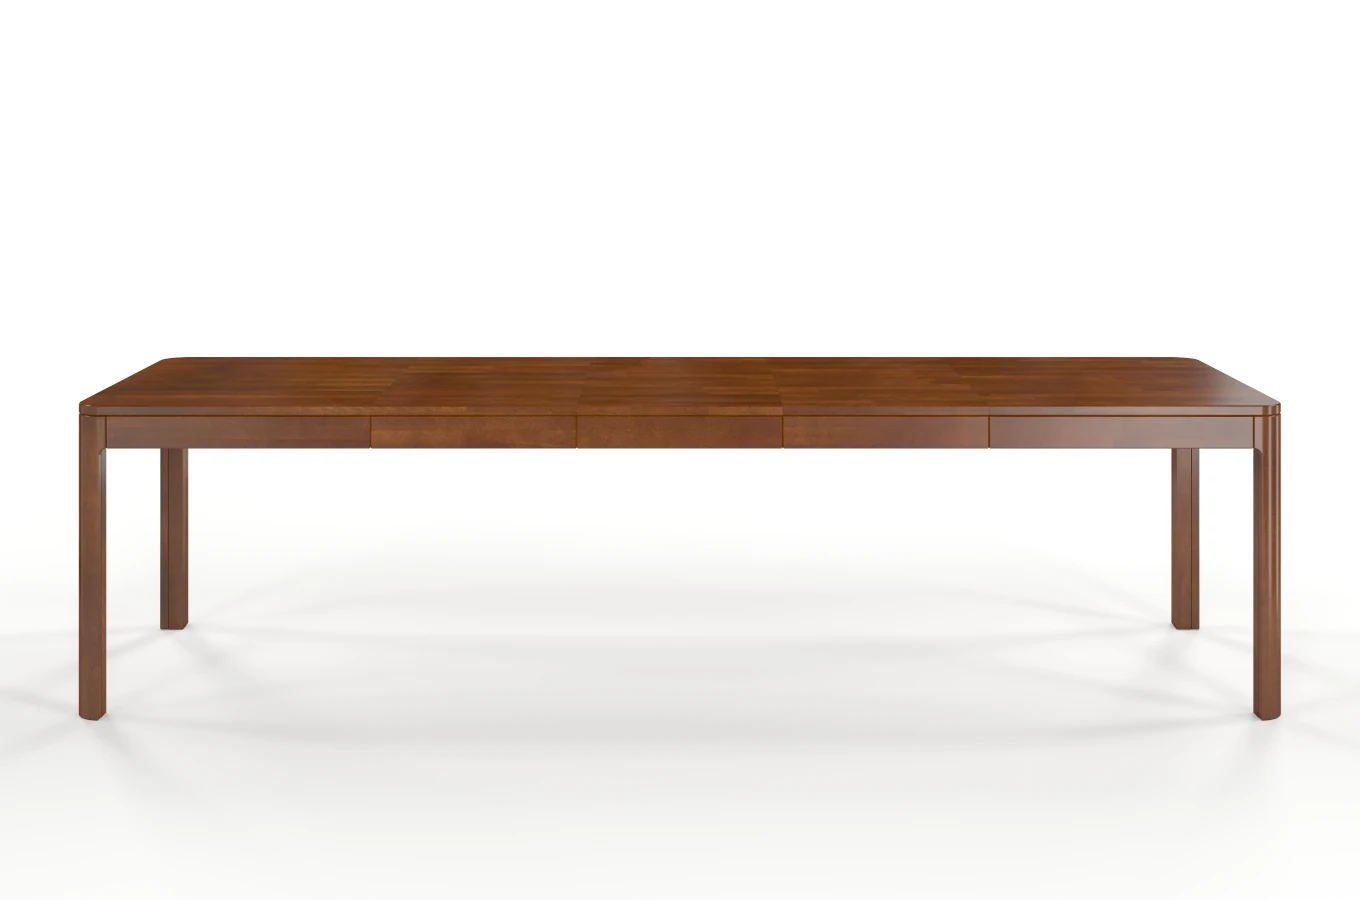 Stół drewniany bukowy rozkładany Skandica RUBY 140-260 cm / kolor orzech